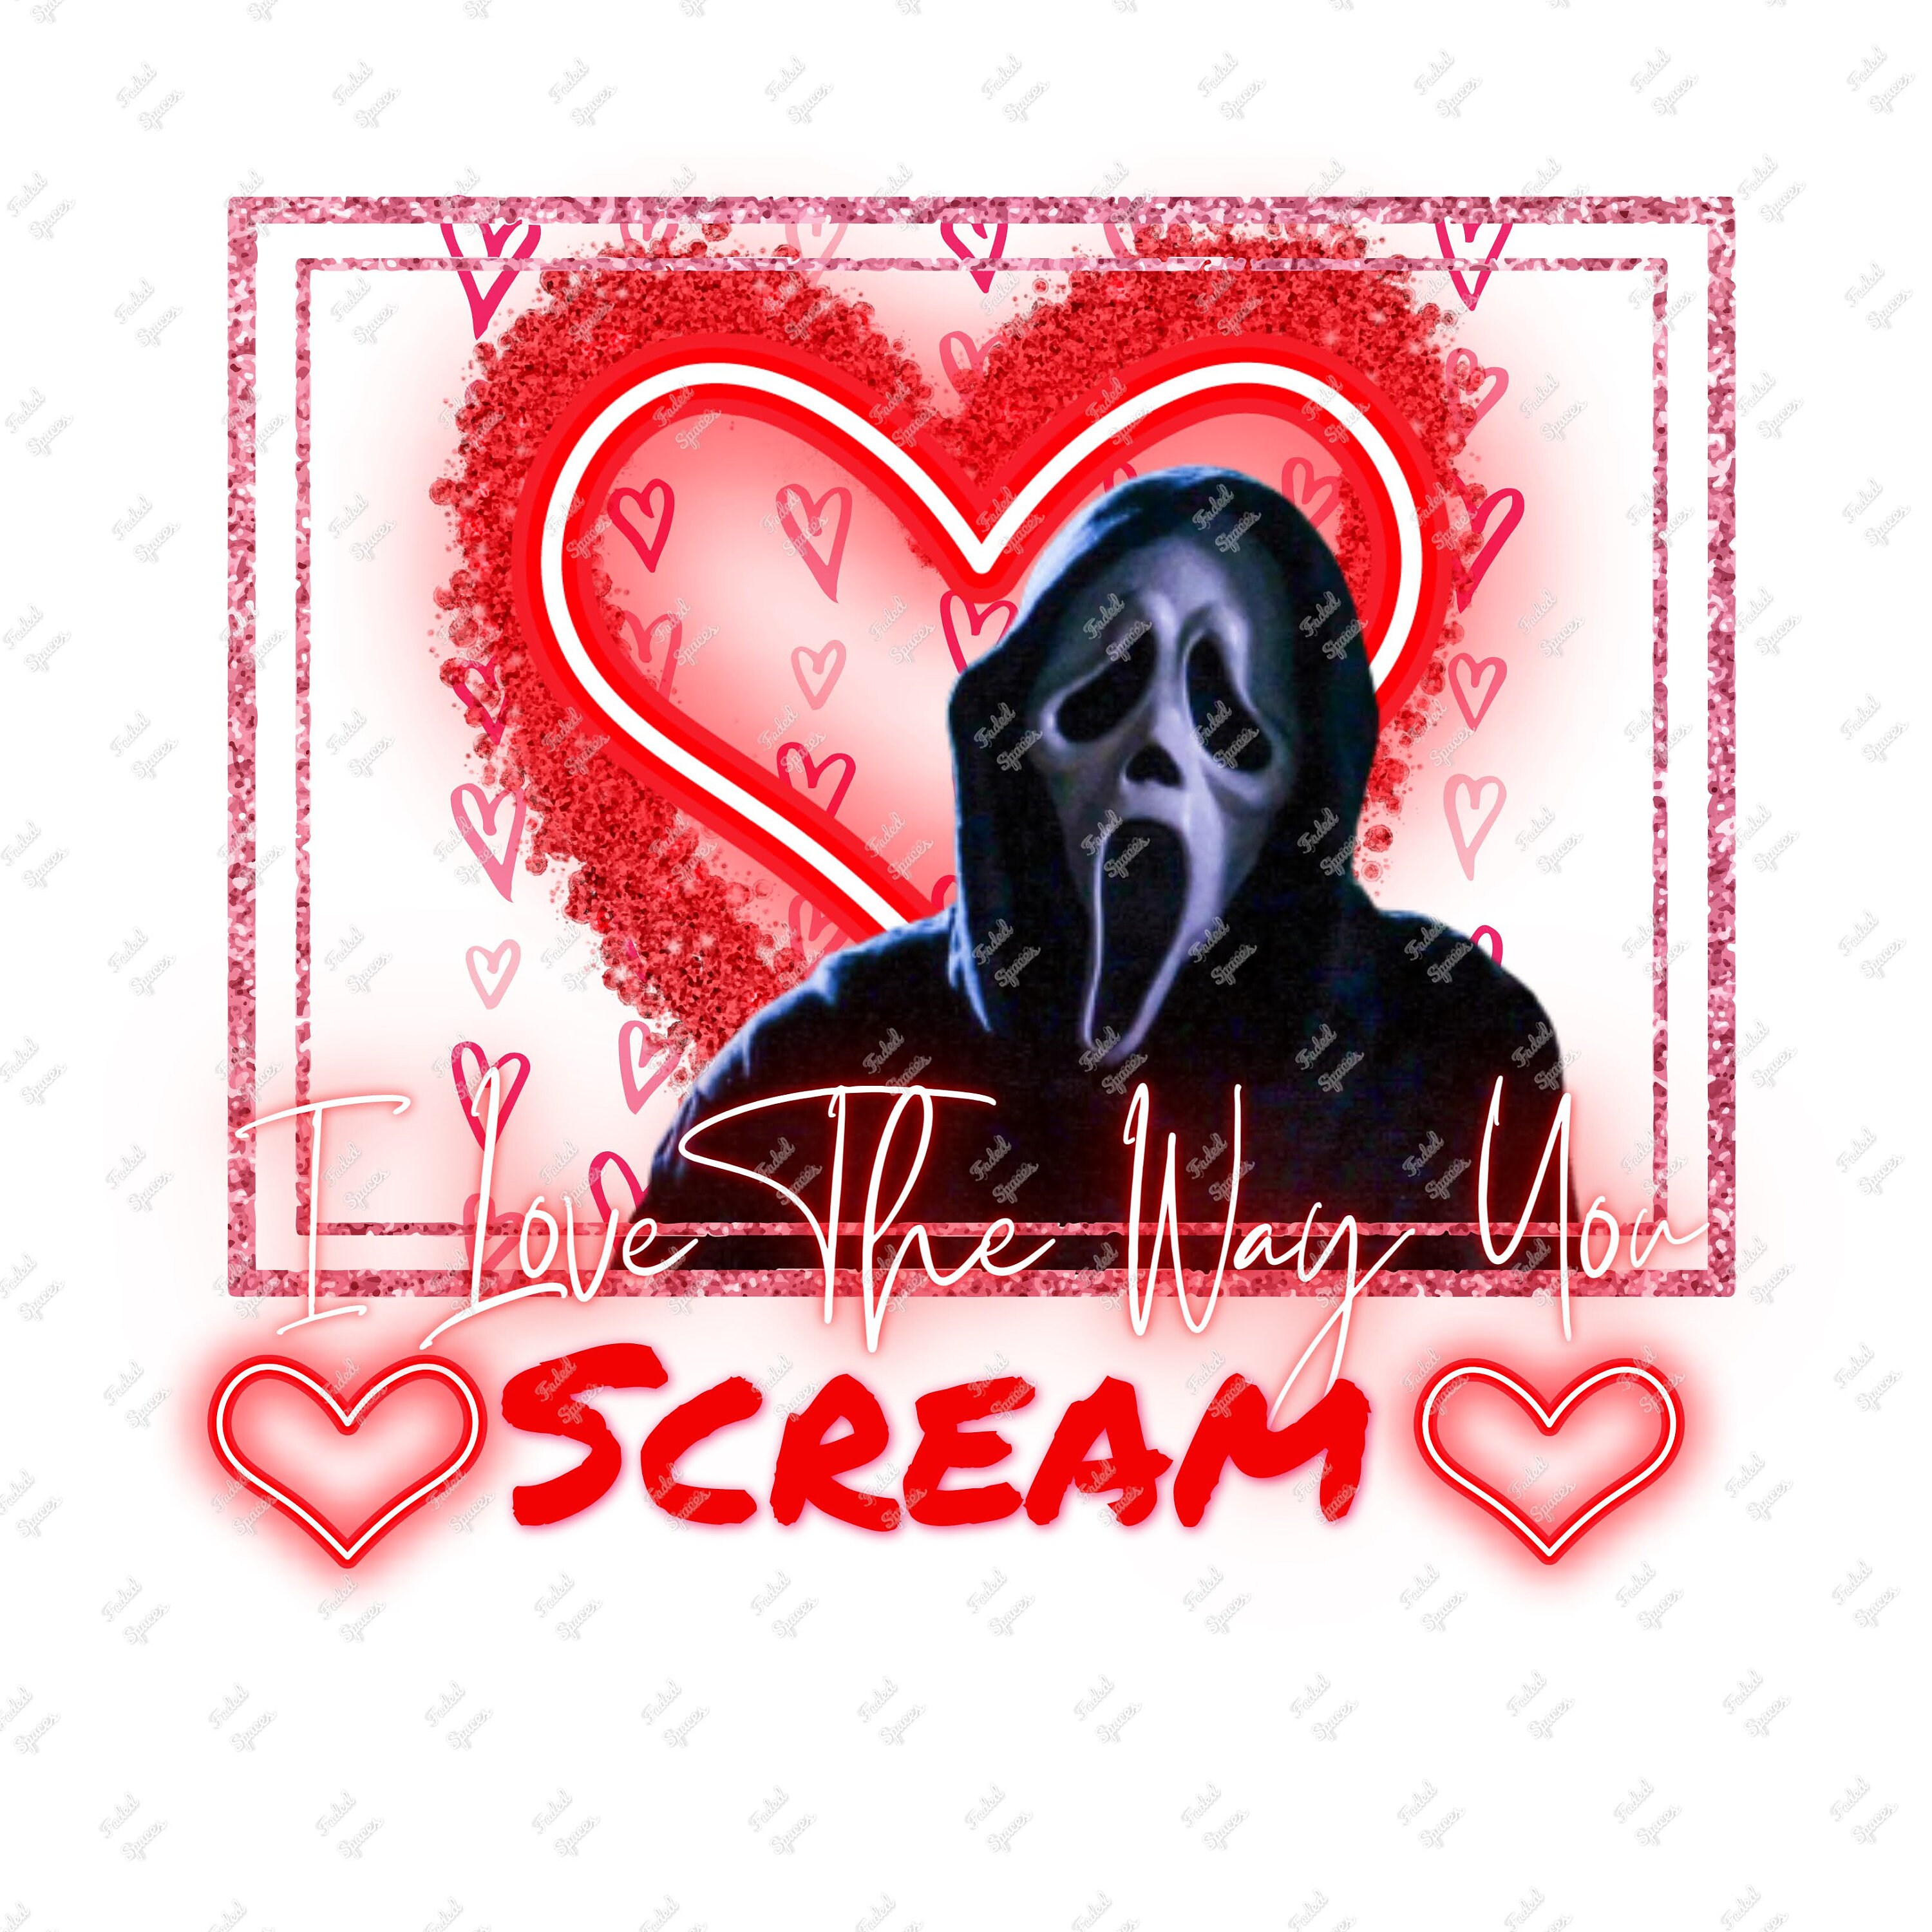 Scream VI - Plugged In